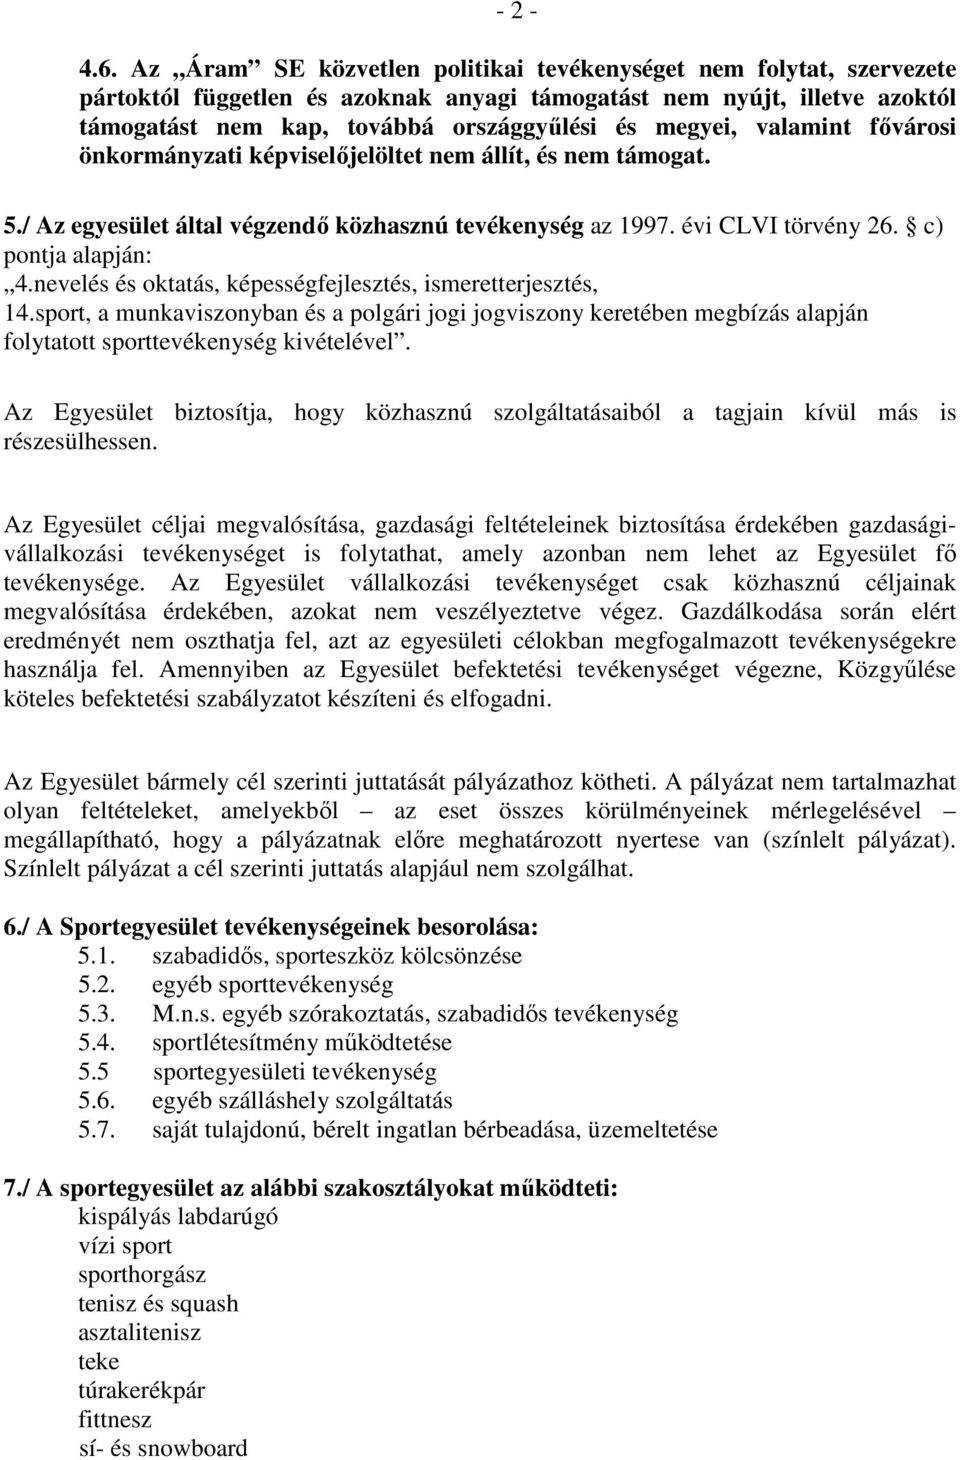 valamint fıvárosi önkormányzati képviselıjelöltet nem állít, és nem támogat. 5./ Az egyesület által végzendı közhasznú tevékenység az 1997. évi CLVI törvény 26. c) pontja alapján: 4.